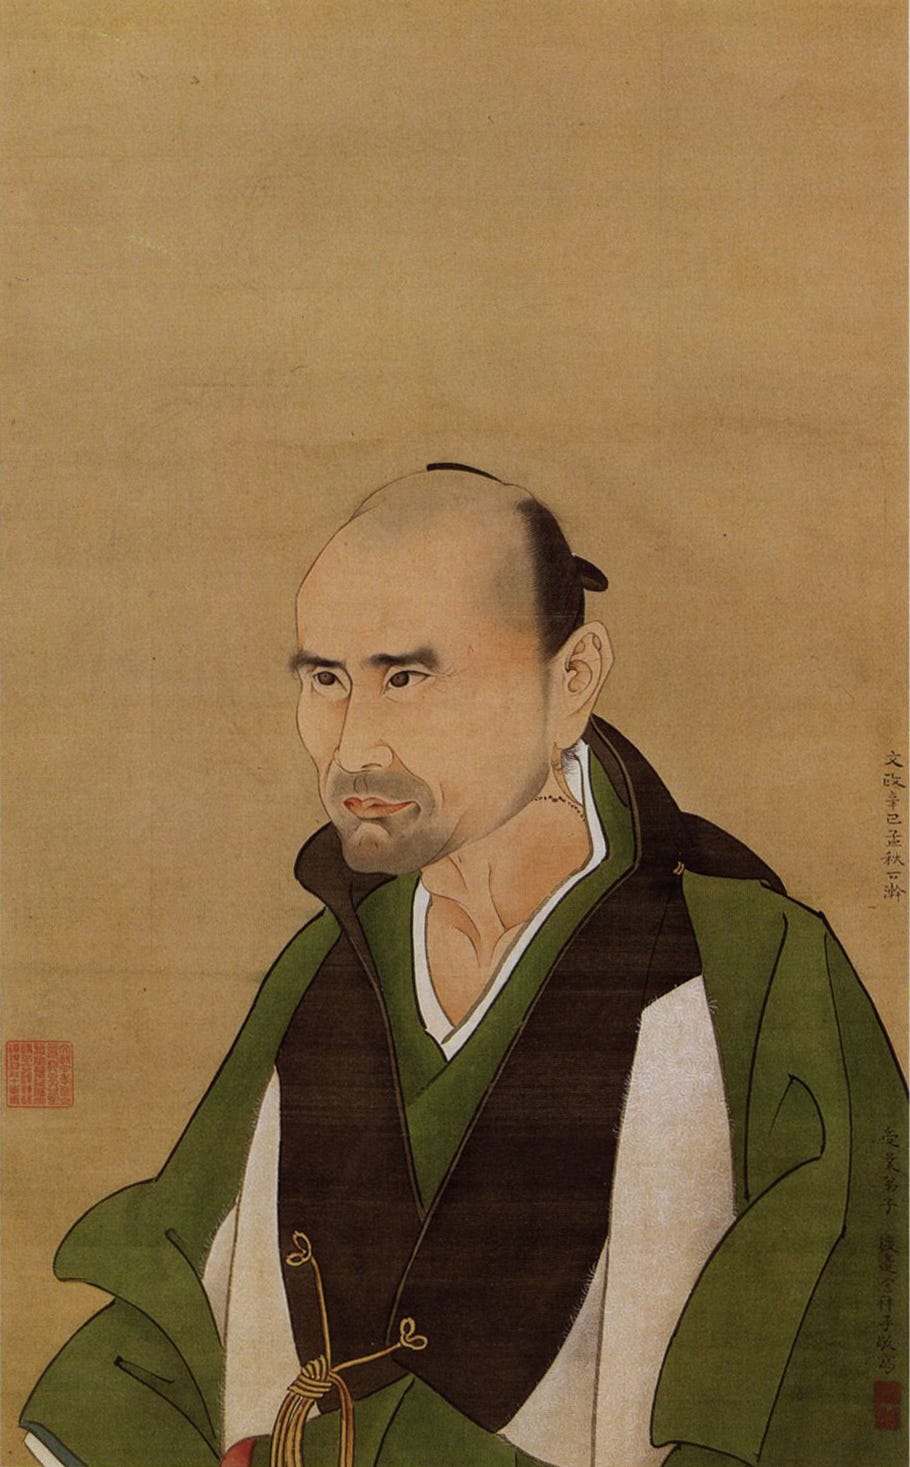 Sato Issai (佐藤一斎, 1772–1859), Yokoi Shonan (横井小楠, 1809 